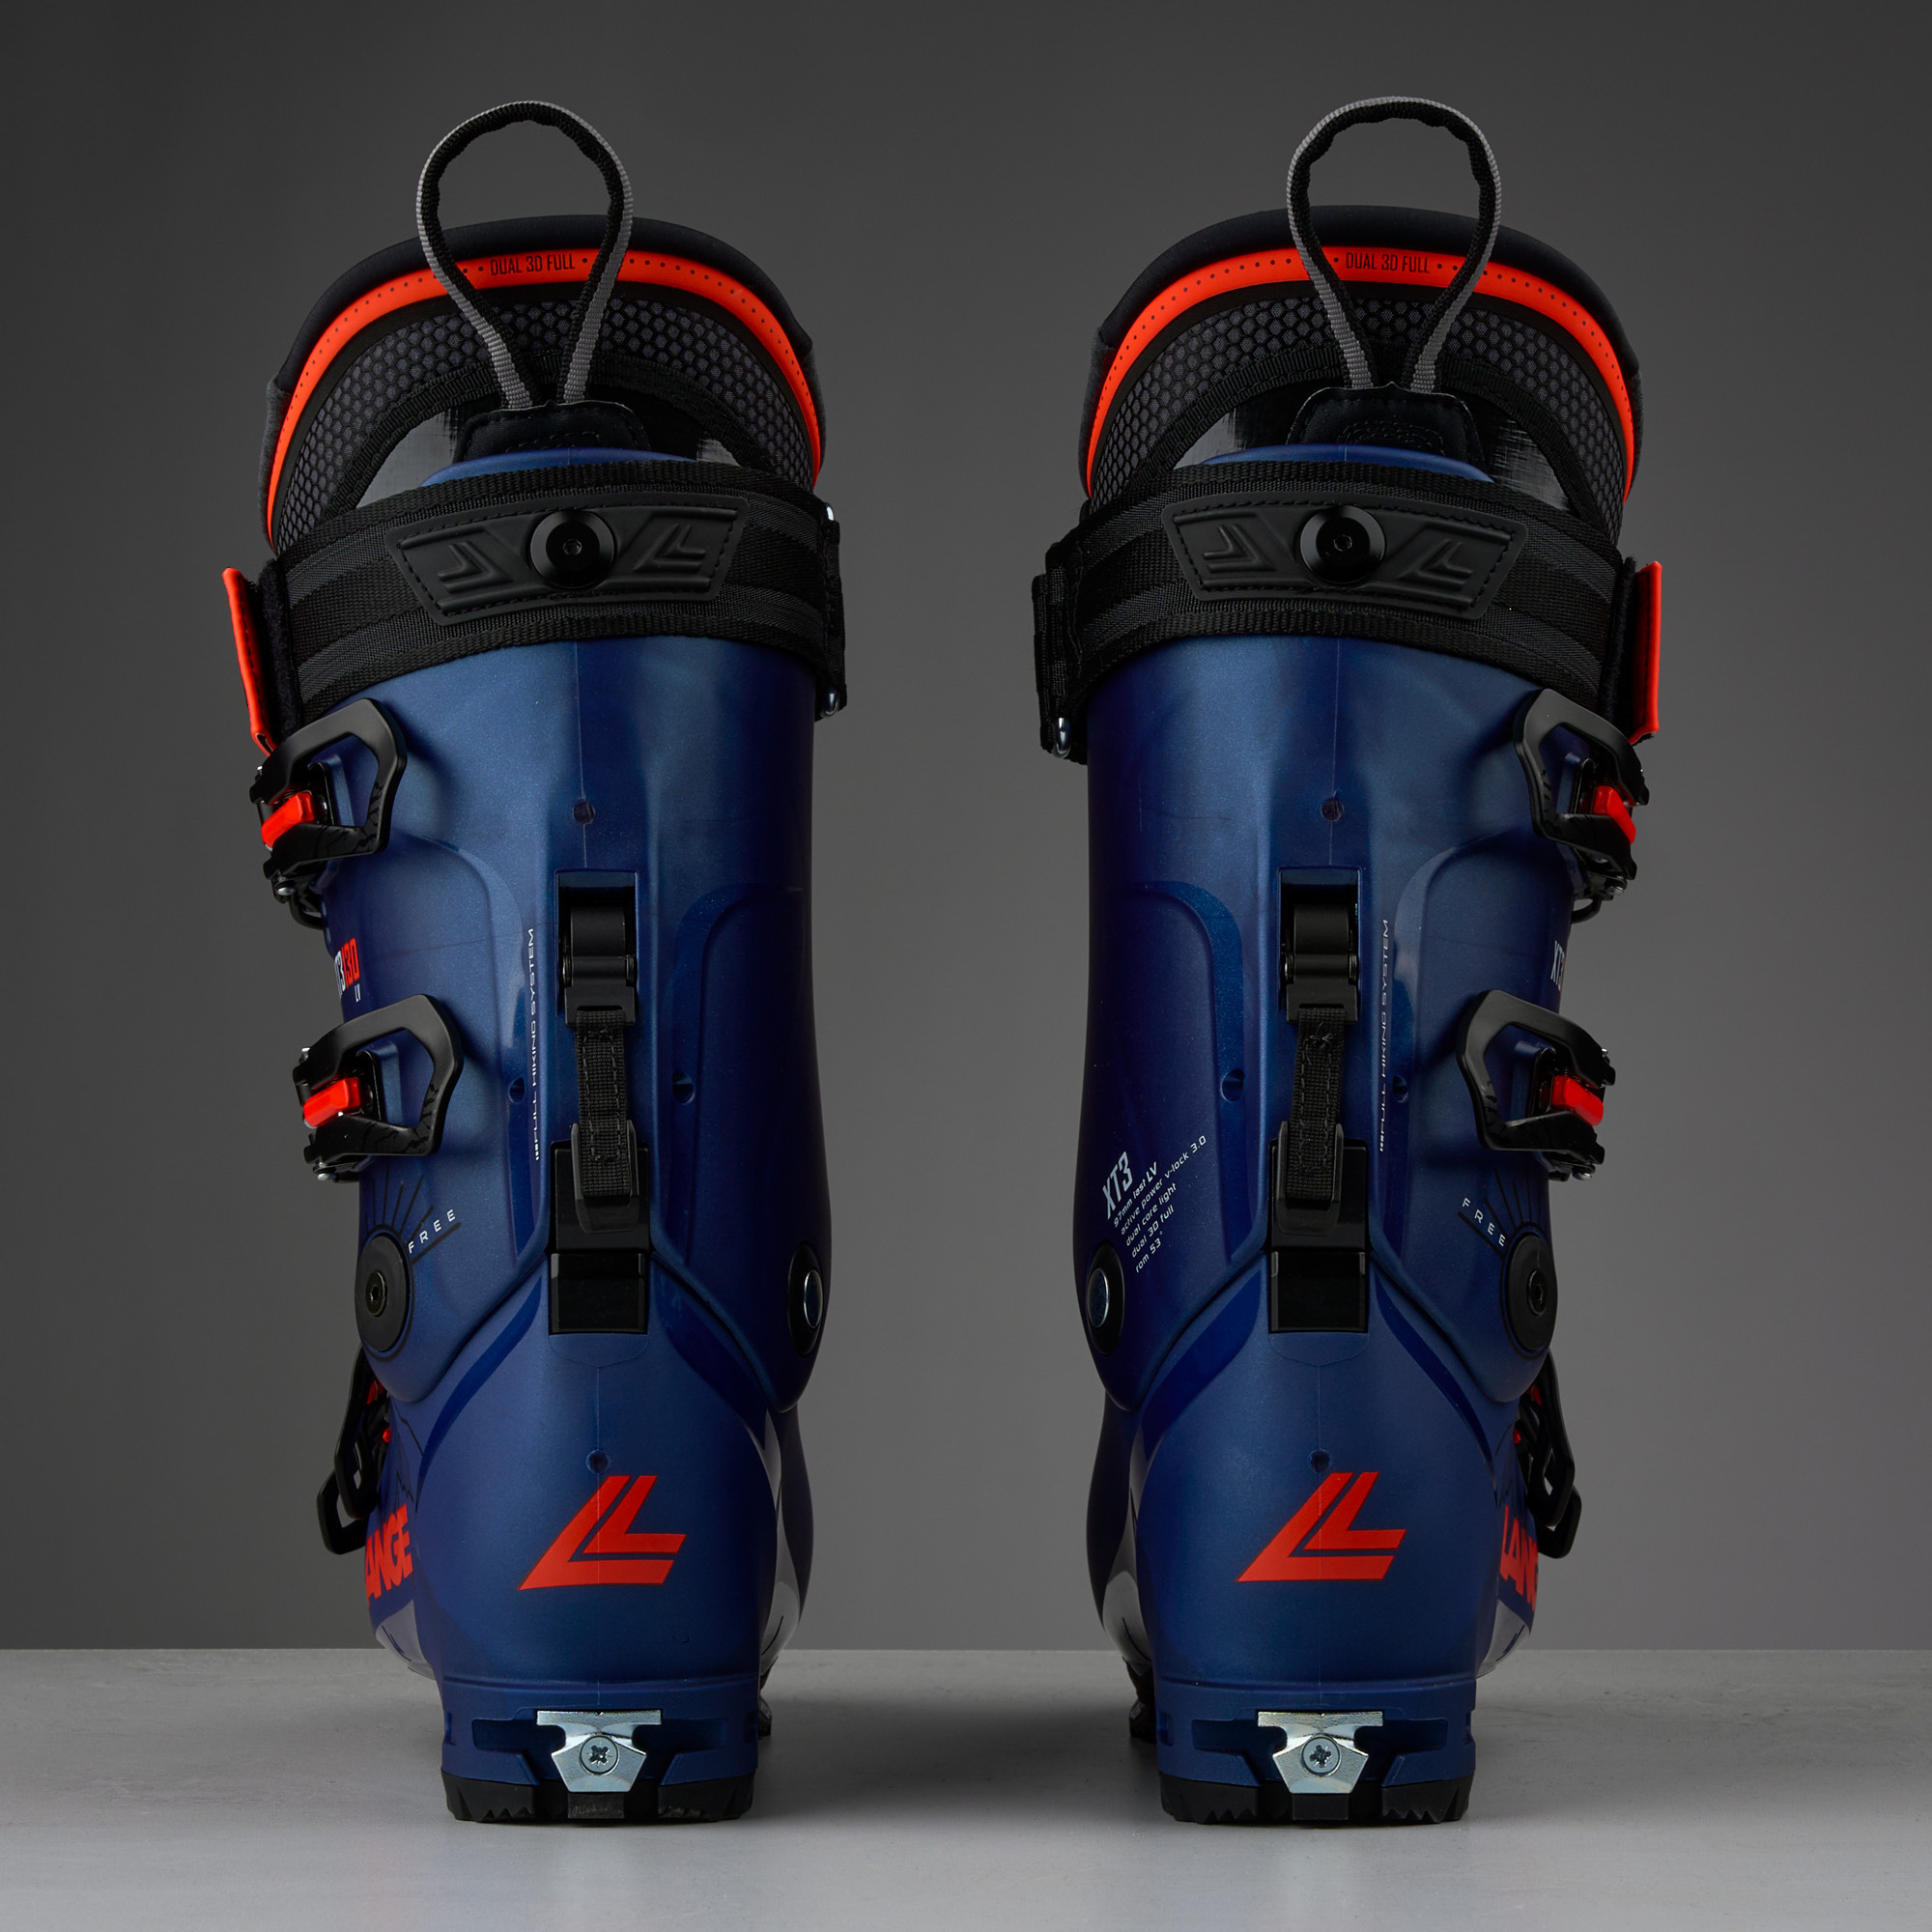 Lange XT3 Free 95 LV W GW Ski Boots · Women's · 2024